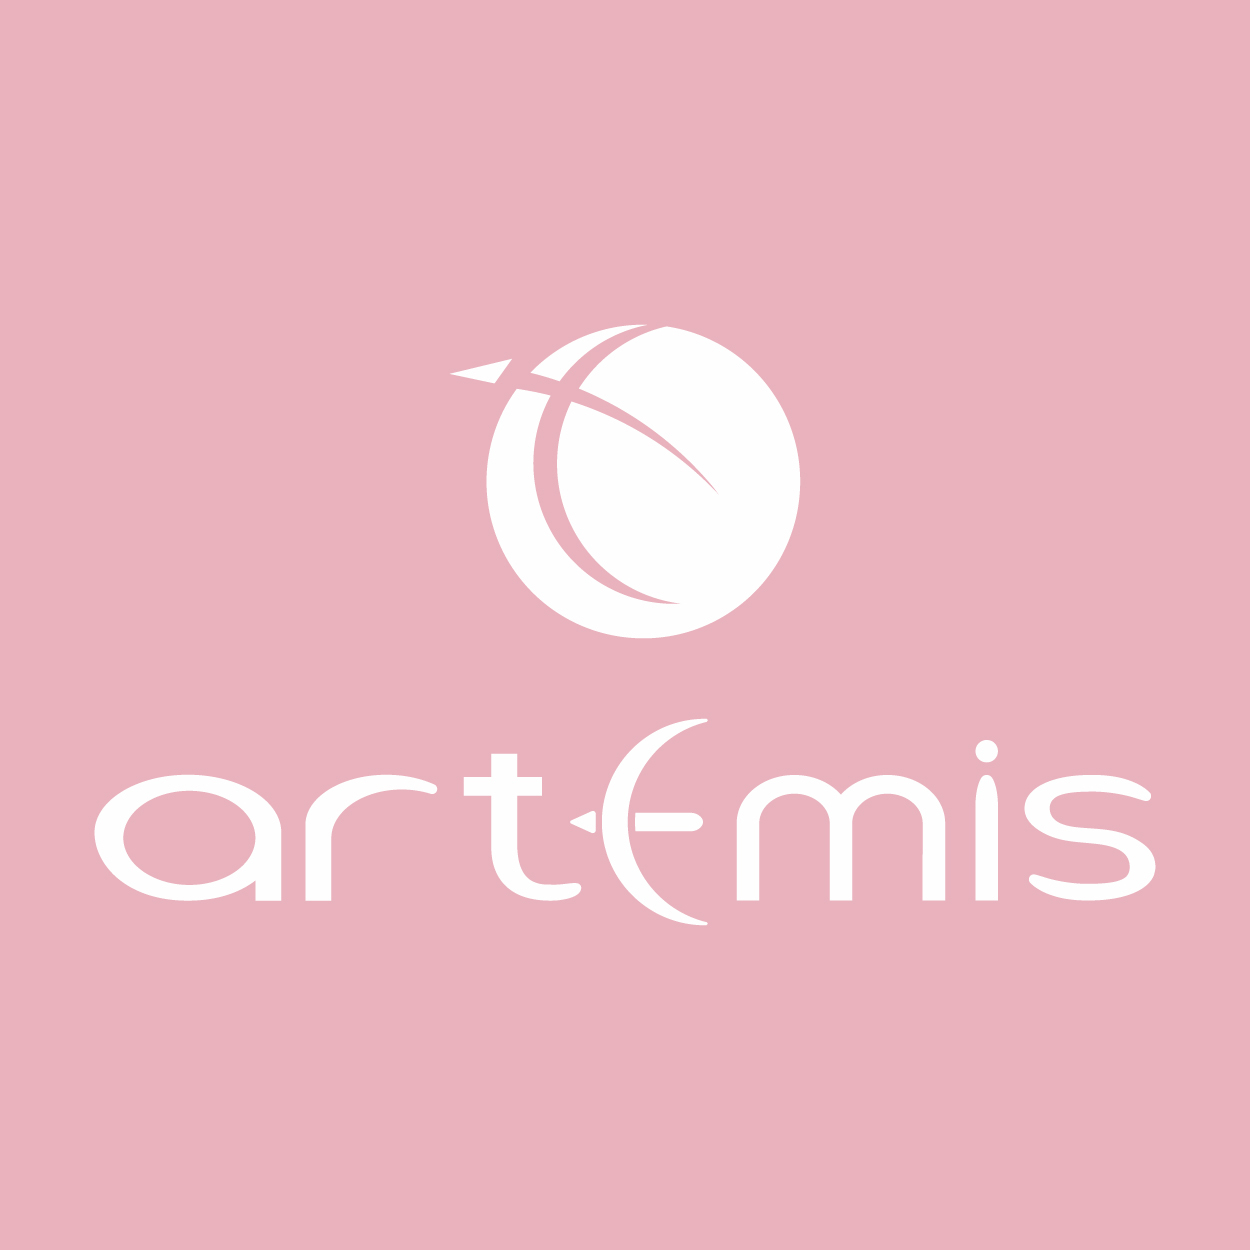 artemis2021.service@gmail.com